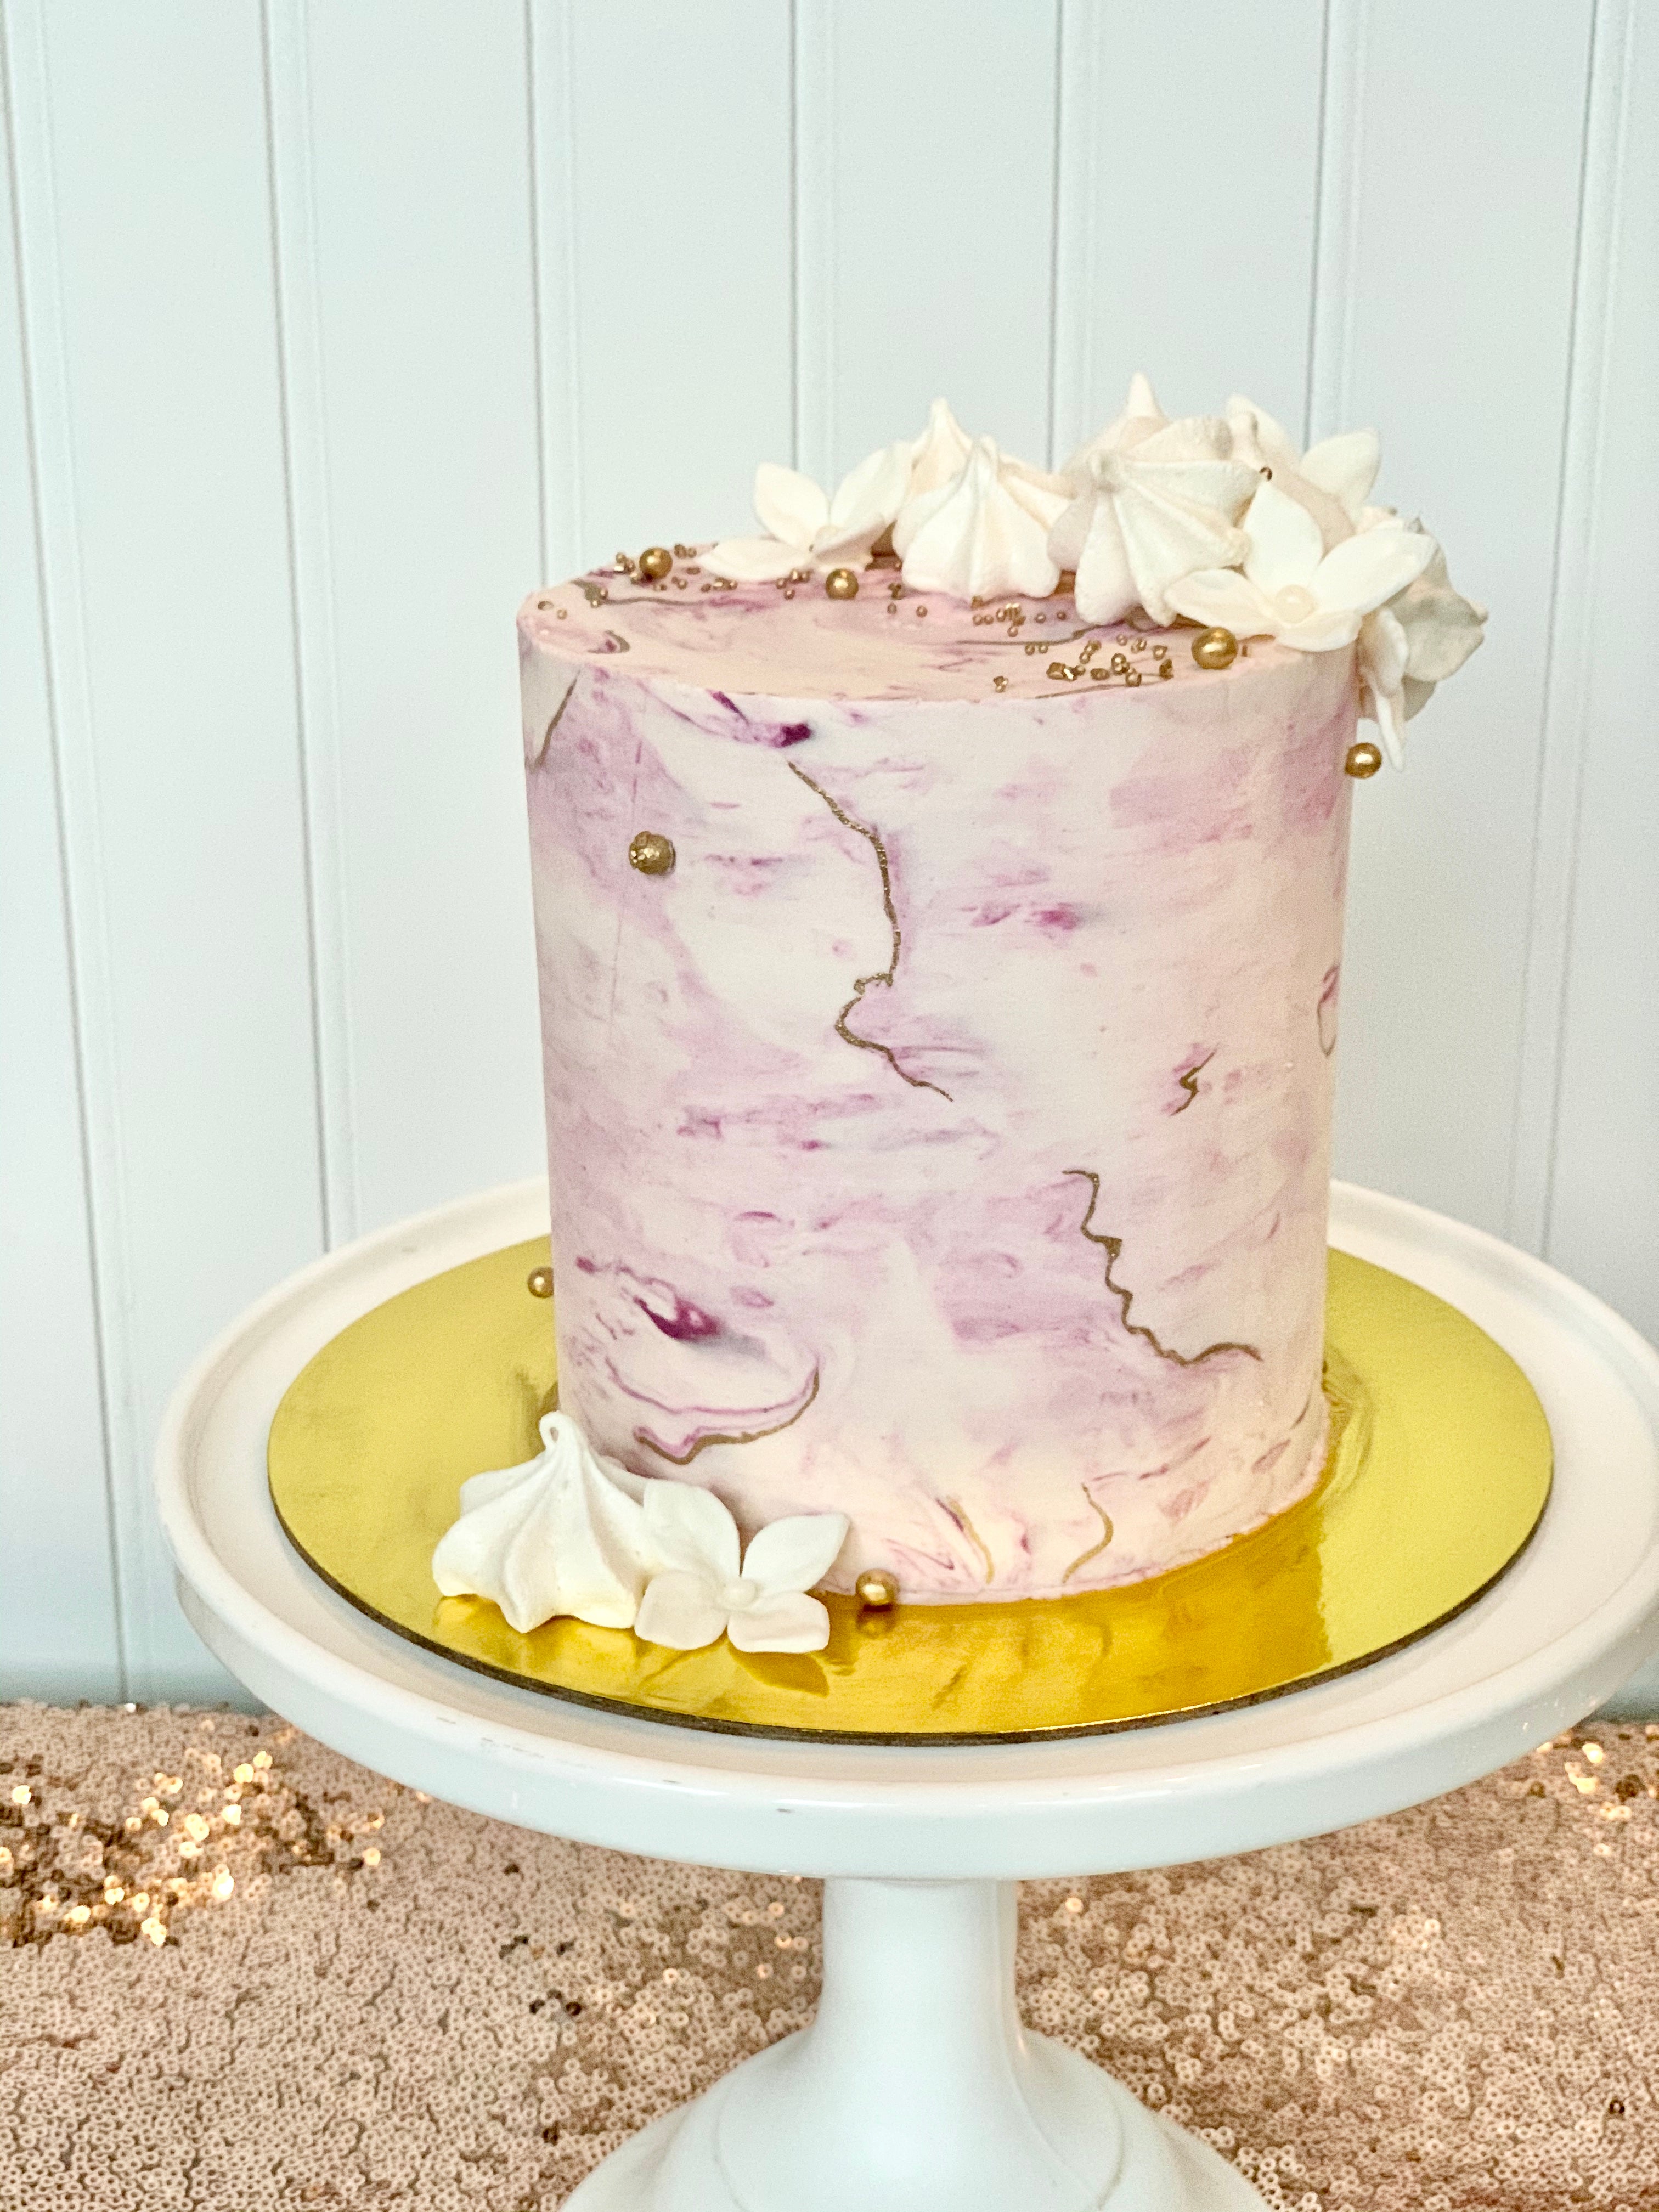 Homemade Marble Cake Recipe - ToriAvey.com